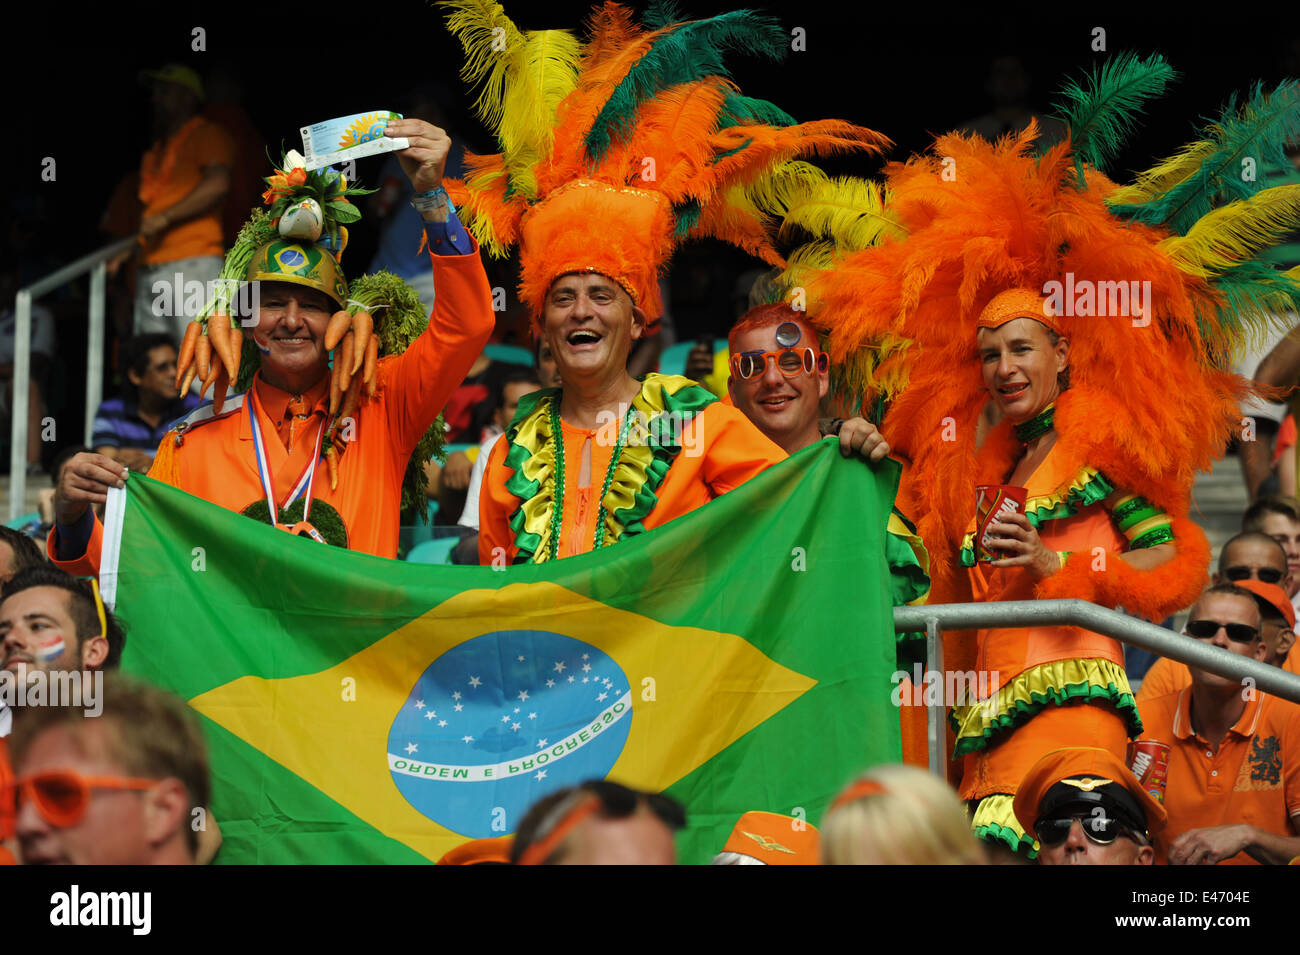 WM 2014, Holanda vs. Spanien, ventiladores Holländische im Stadion, Salvador da Bahia, Brasilien. Sólo para uso editorial. Foto de stock